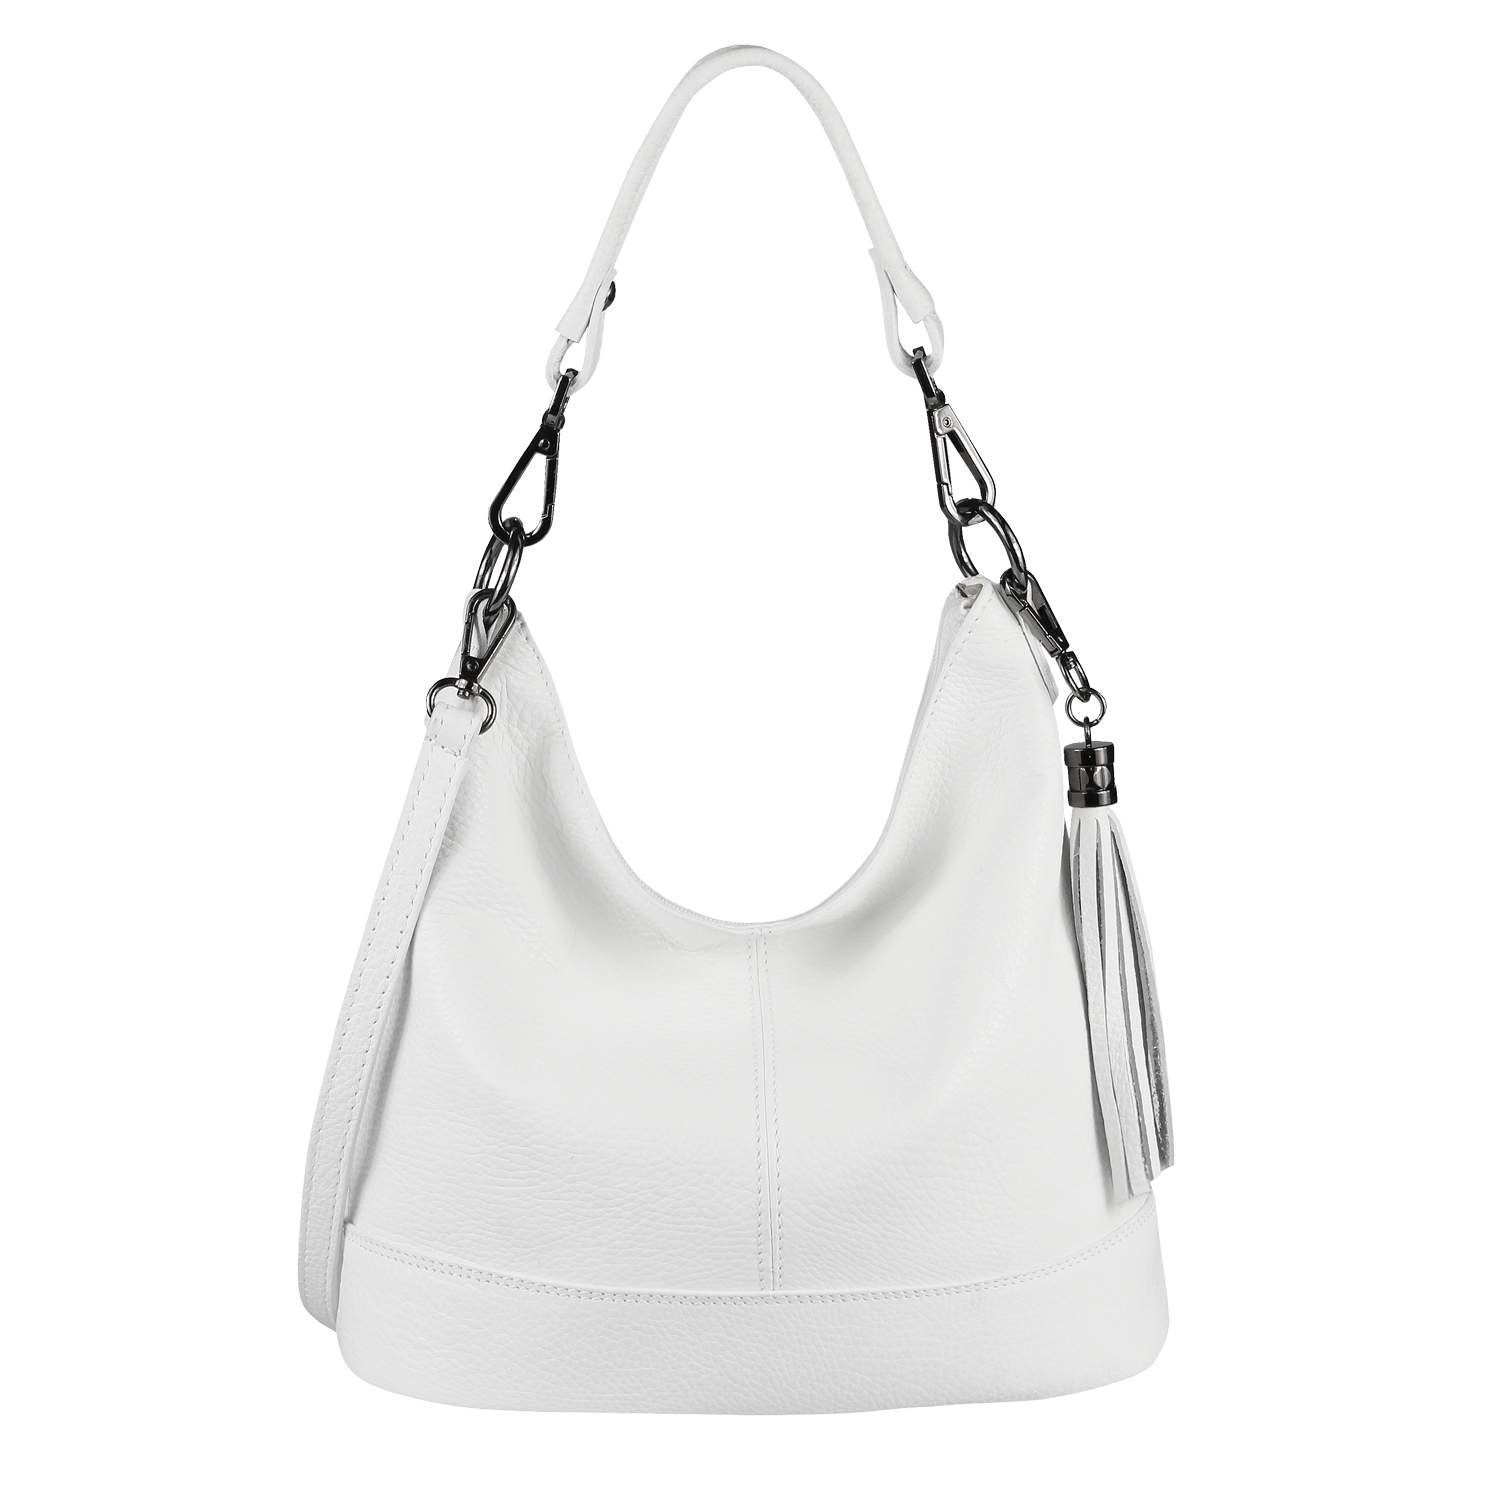 ITALYSHOP24 Schultertasche Made in Italy Damen Leder Tasche Shopper, als Handtasche, CrossOver, Umhängetasche tragbar Weiß